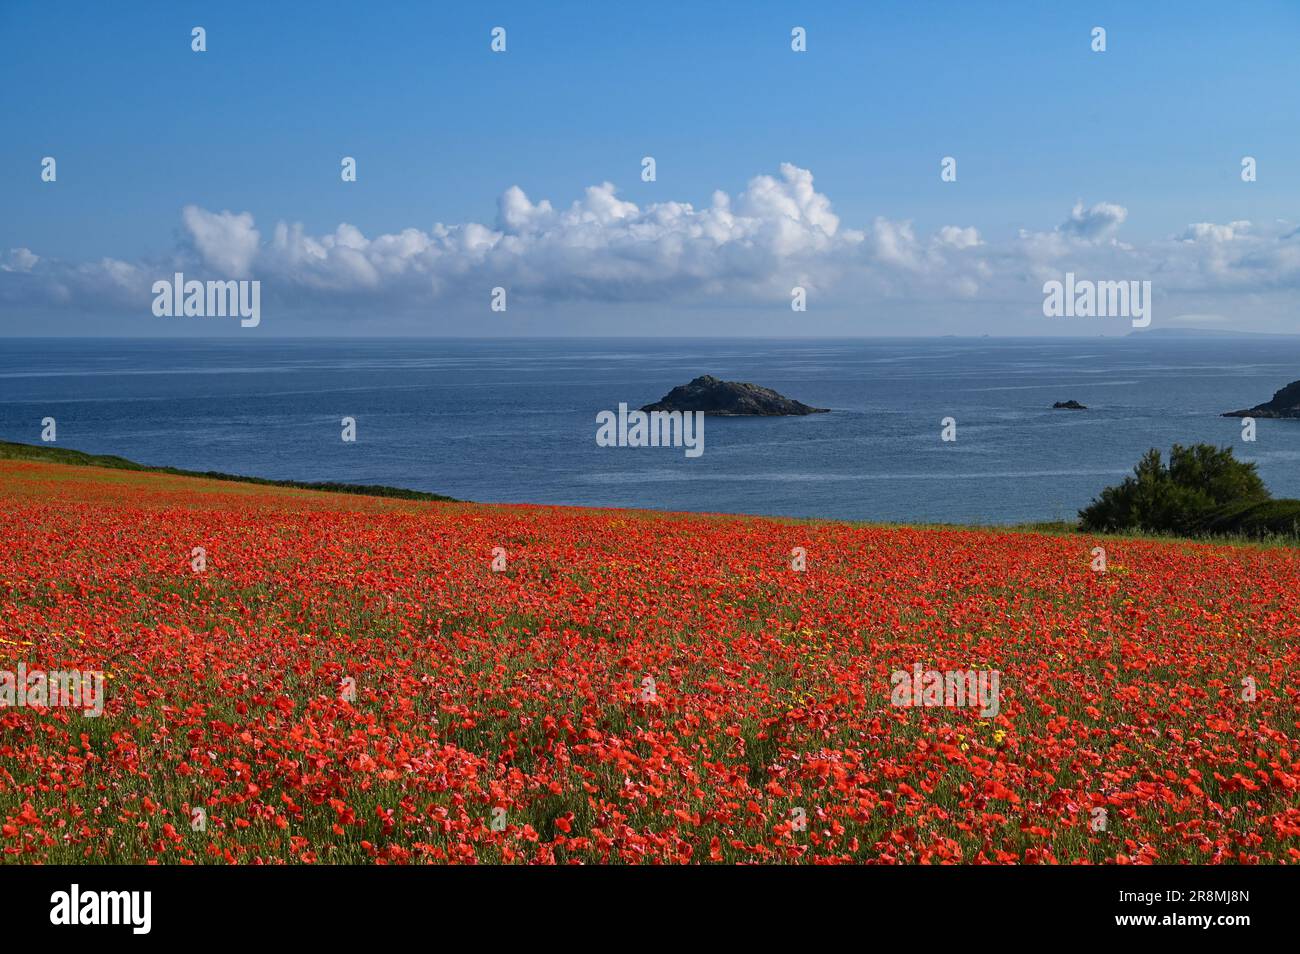 Champ de pavot plein de fleurs rouges avec la mer et le ciel bleu en arrière-plan à l'ouest de pentire, Cornwall, Royaume-Uni Banque D'Images